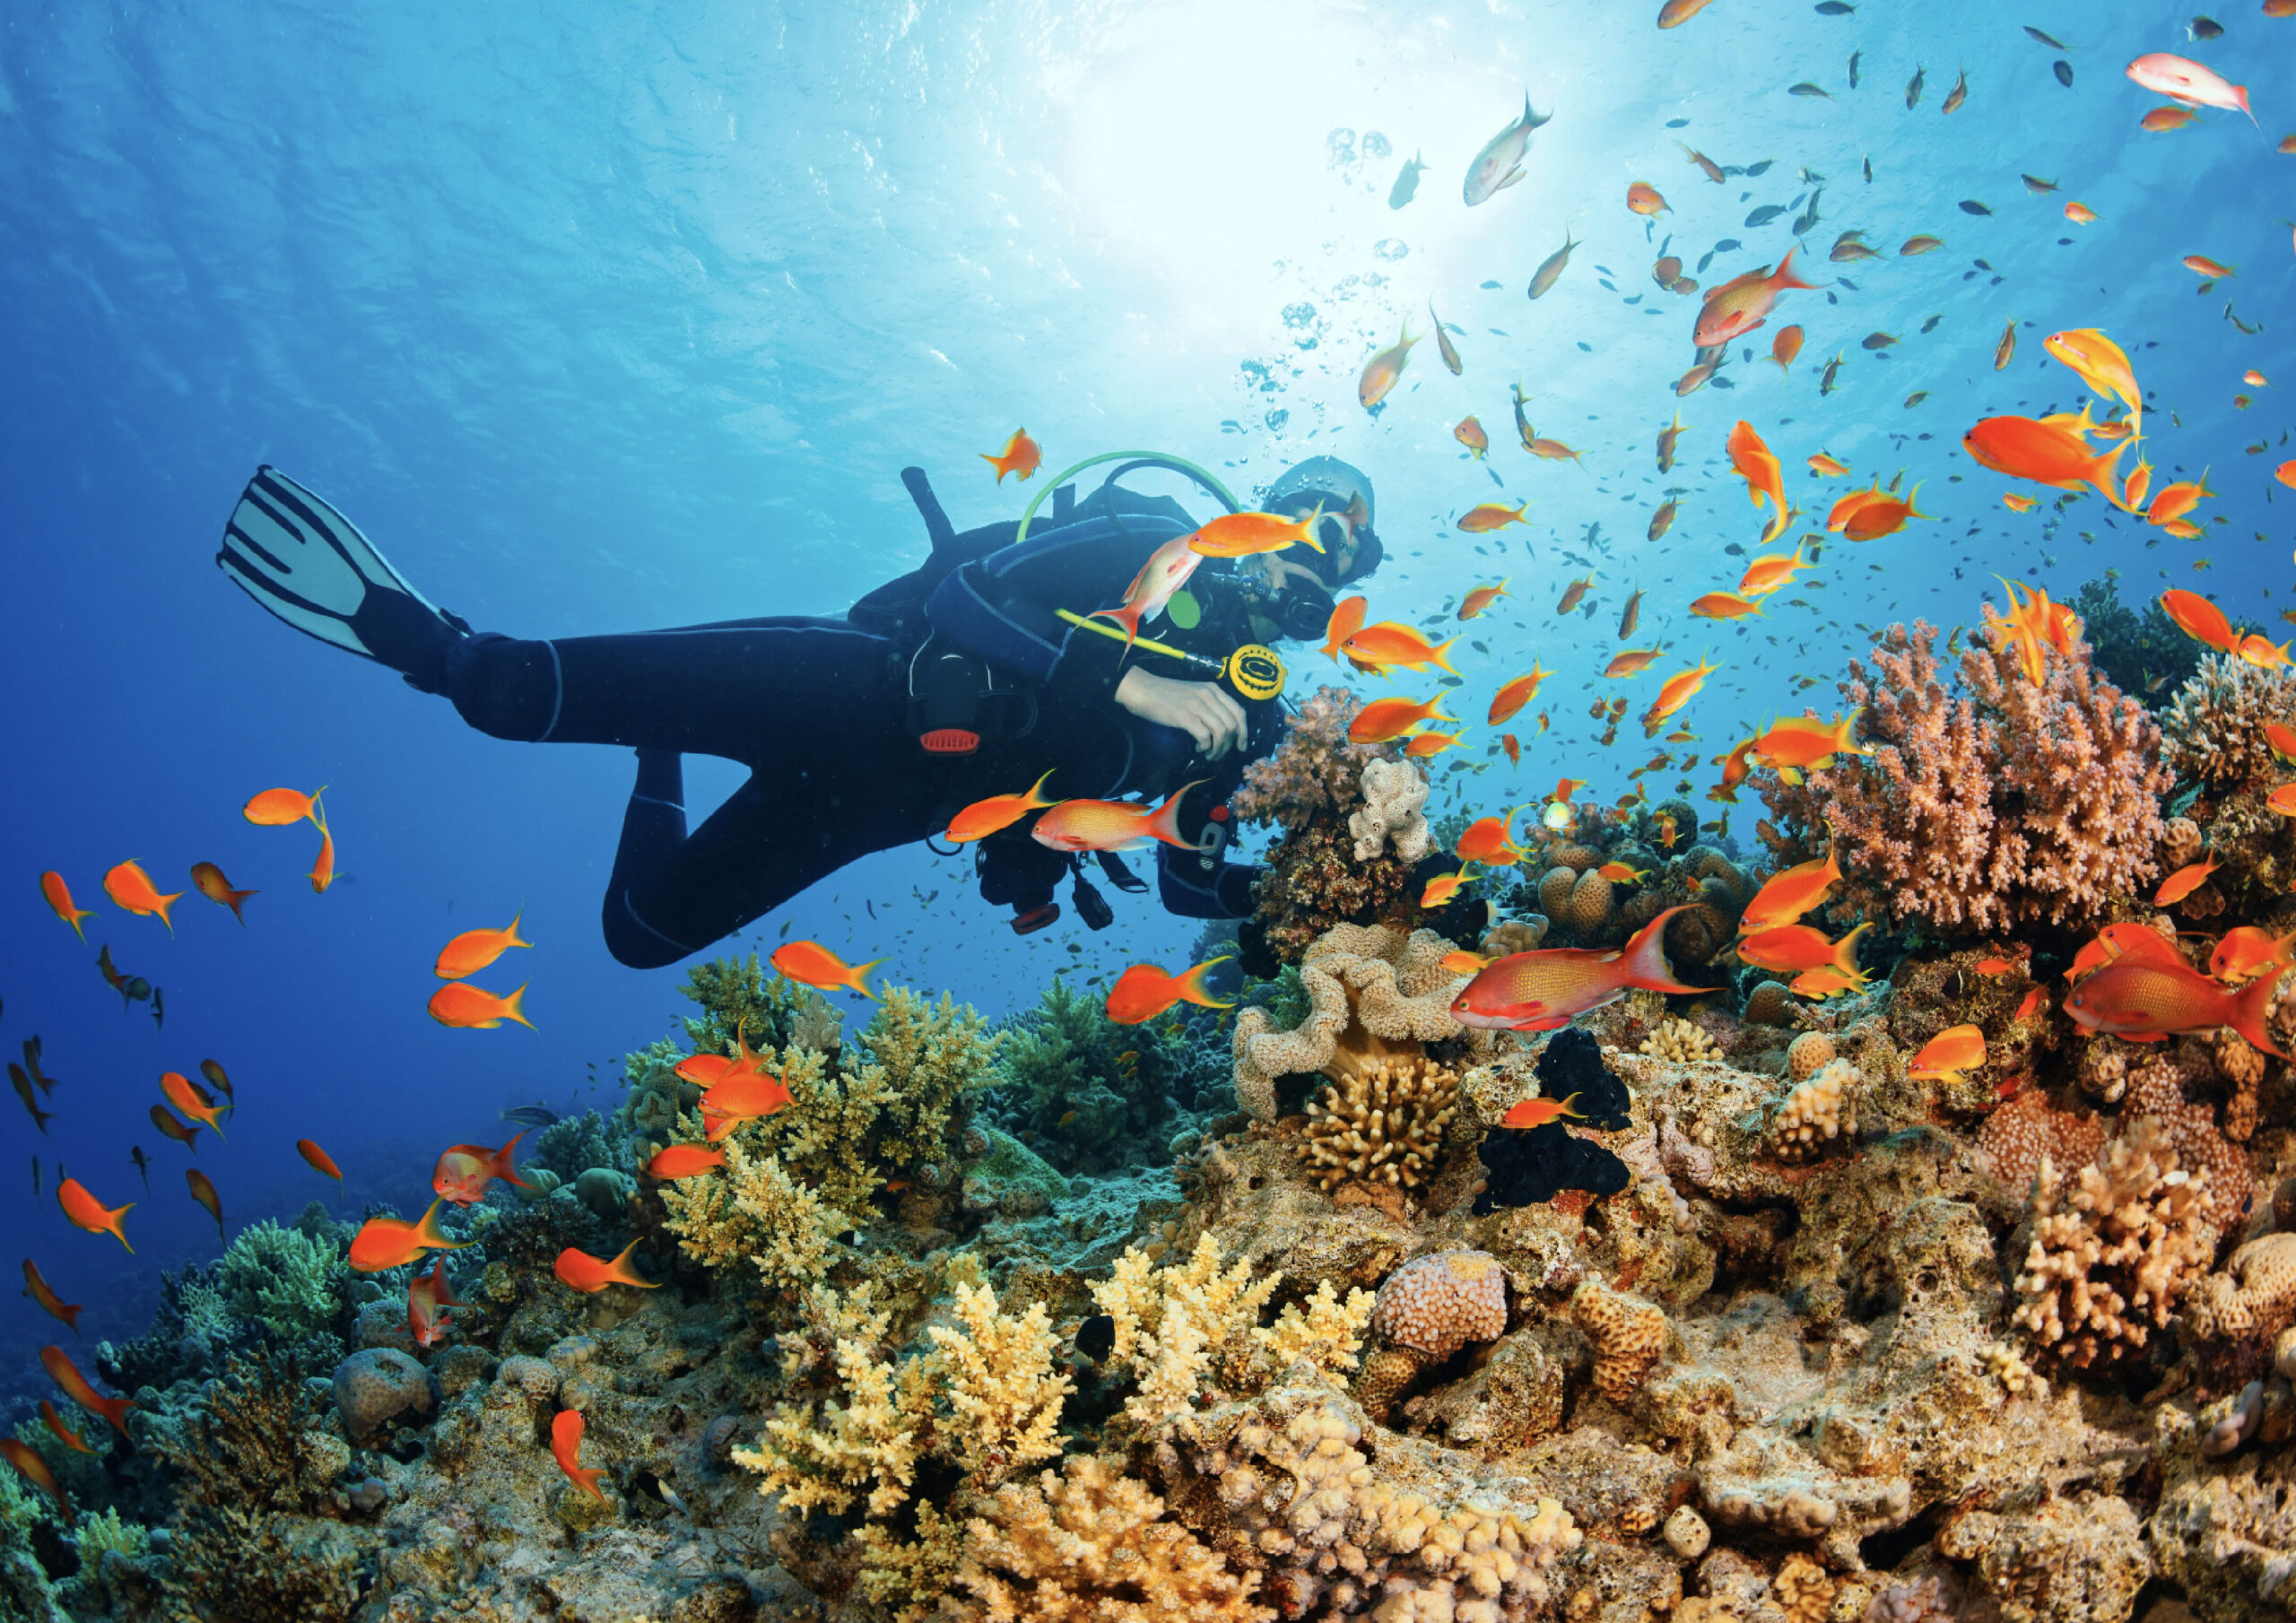 Turismul subacvatic, la mare căutare. Cât costă o experiență în adâncurile oceanului